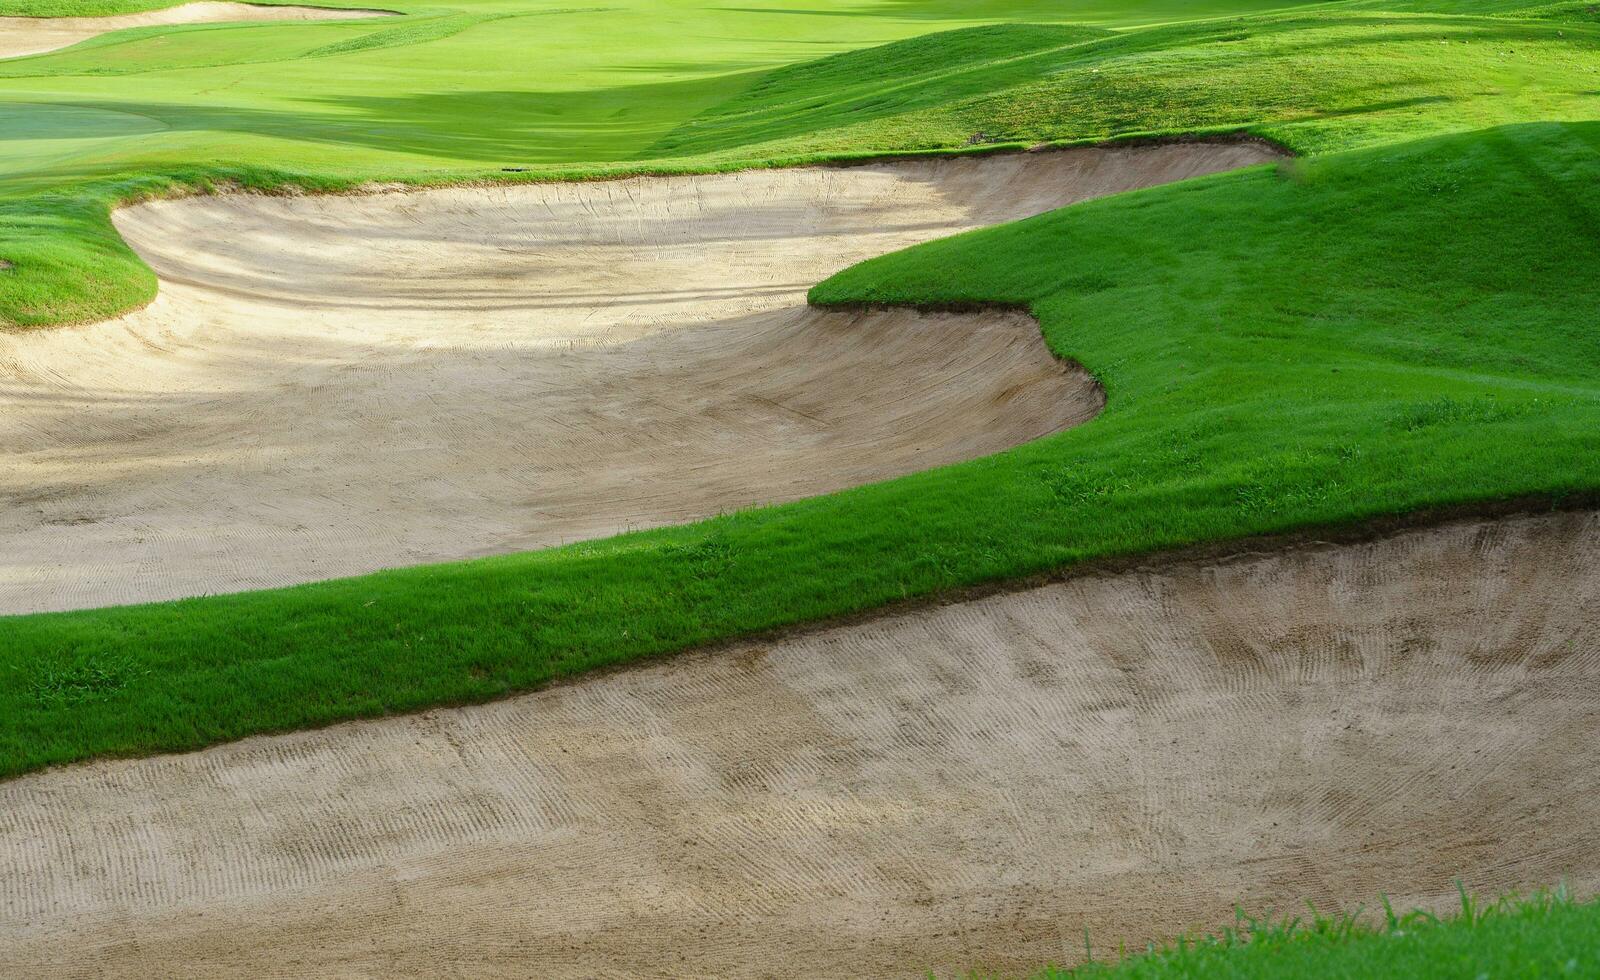 golf kurs sand grop bunkrar, grön gräs omgivande de skön sand hål är ett av de mest utmanande hinder för golfare och lägger till till de skönhet av de golf kurs. foto